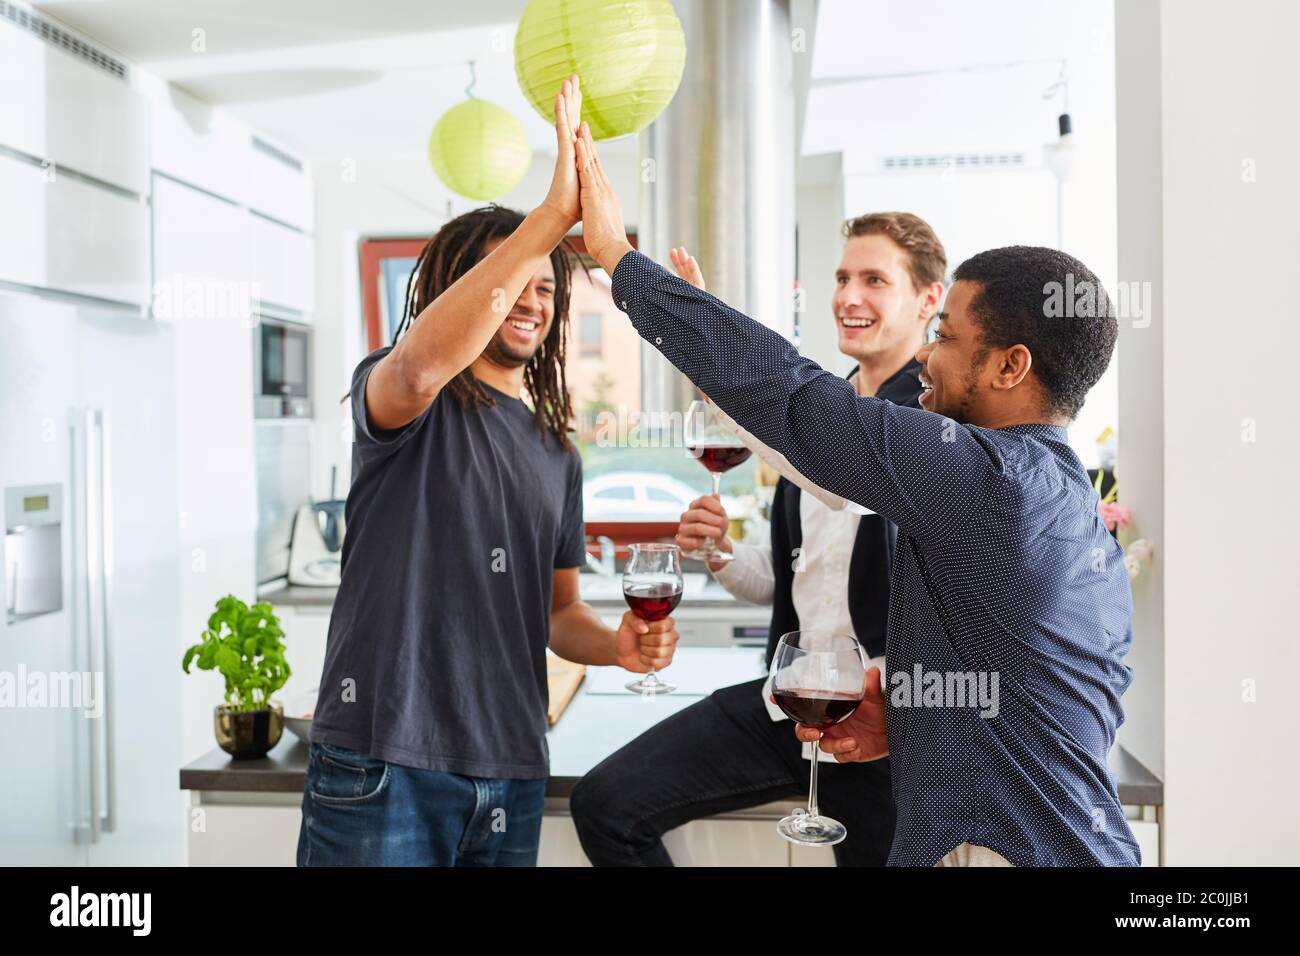 Gruppo di amici che salutano con cinque persone in cucina con un bicchiere di vino rosso Foto Stock